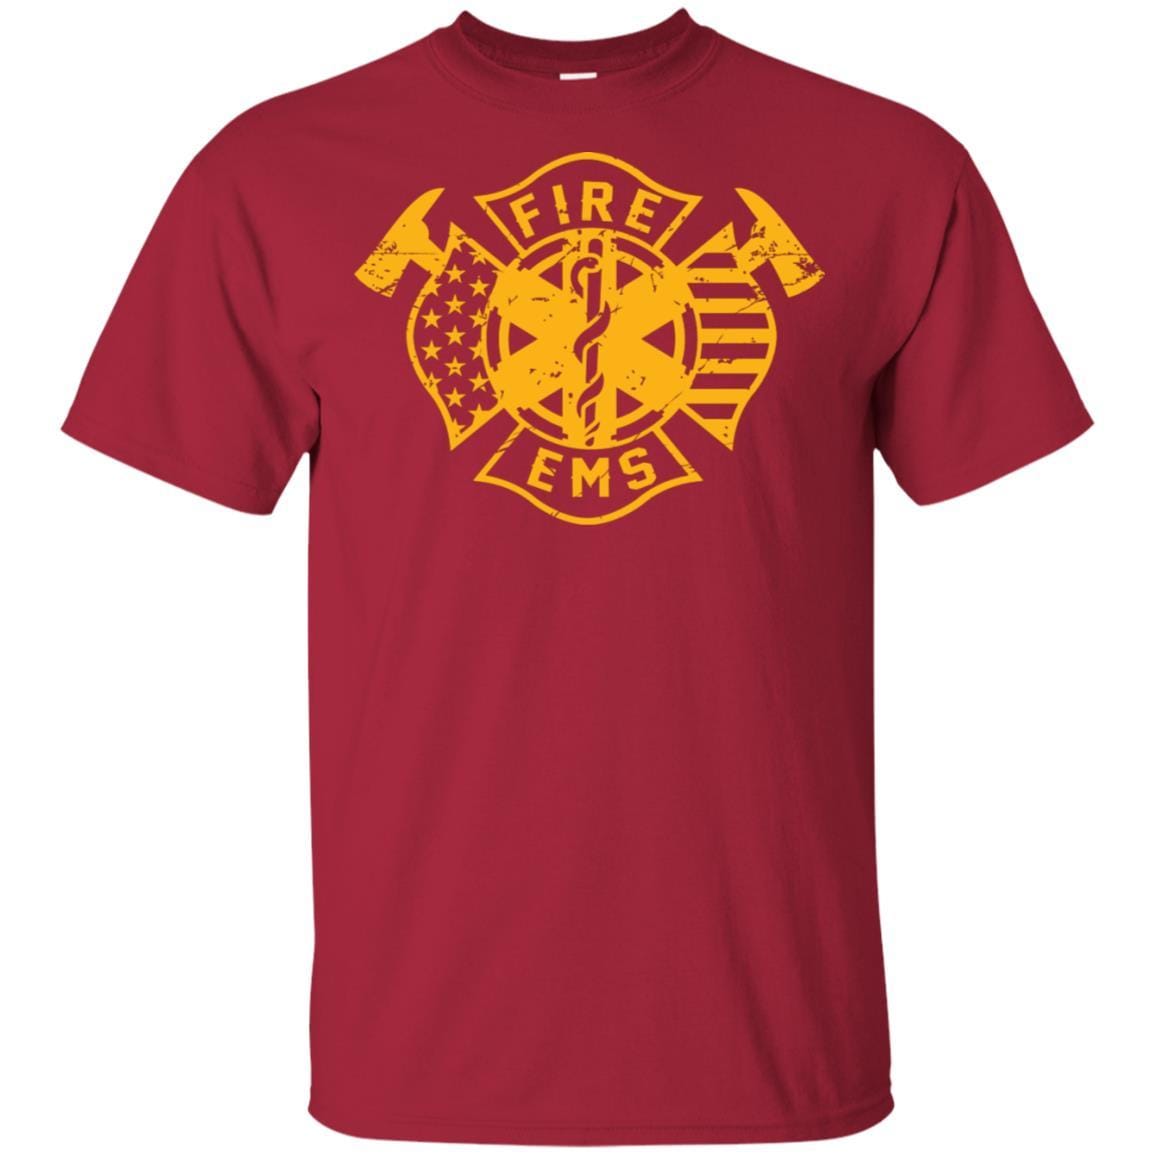 Firefighter T-Shirt Fire Ems Department Shirts Firemen Gifts Idea ...